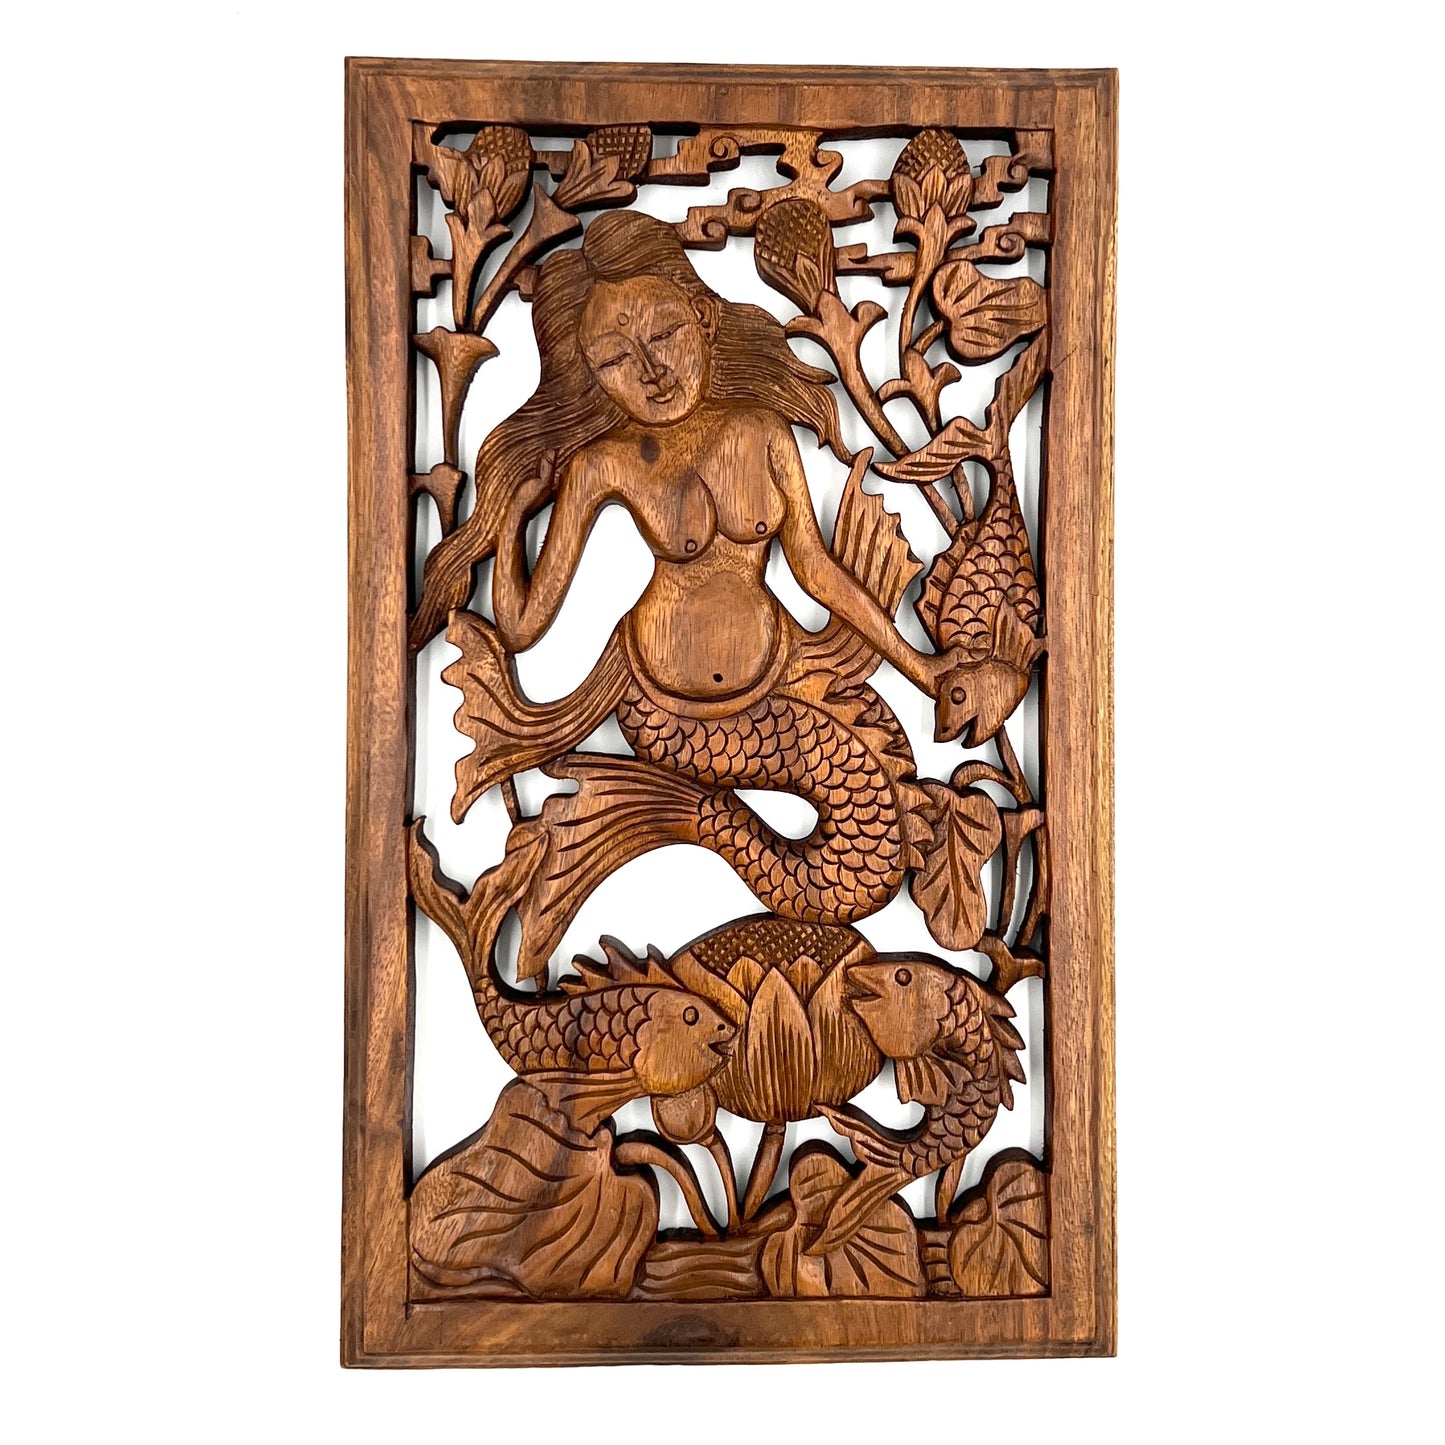 Mermaid Panel Carving